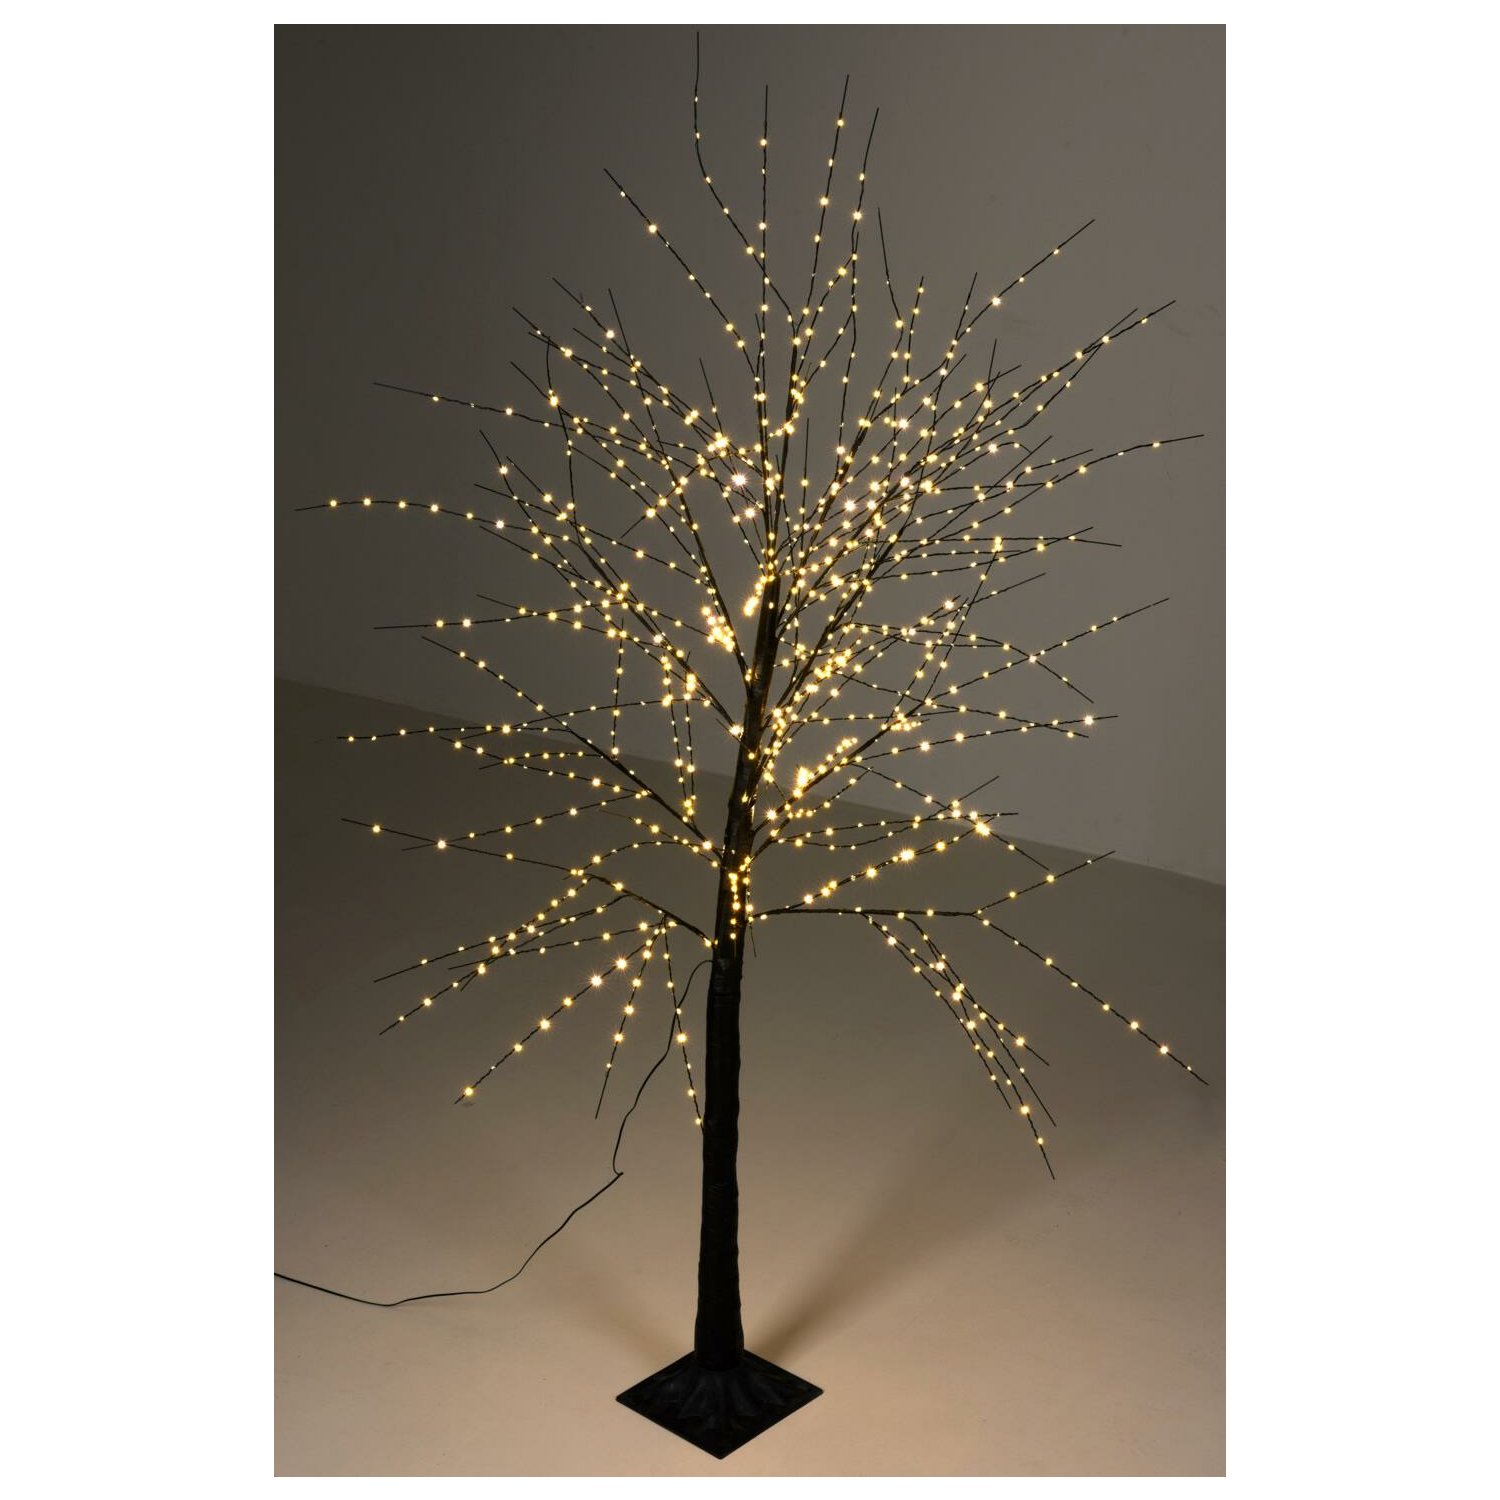 Lichterbaum 840 LED warmweiß 180 cm - Silhouette beleuchteter Bau, 72,99 €